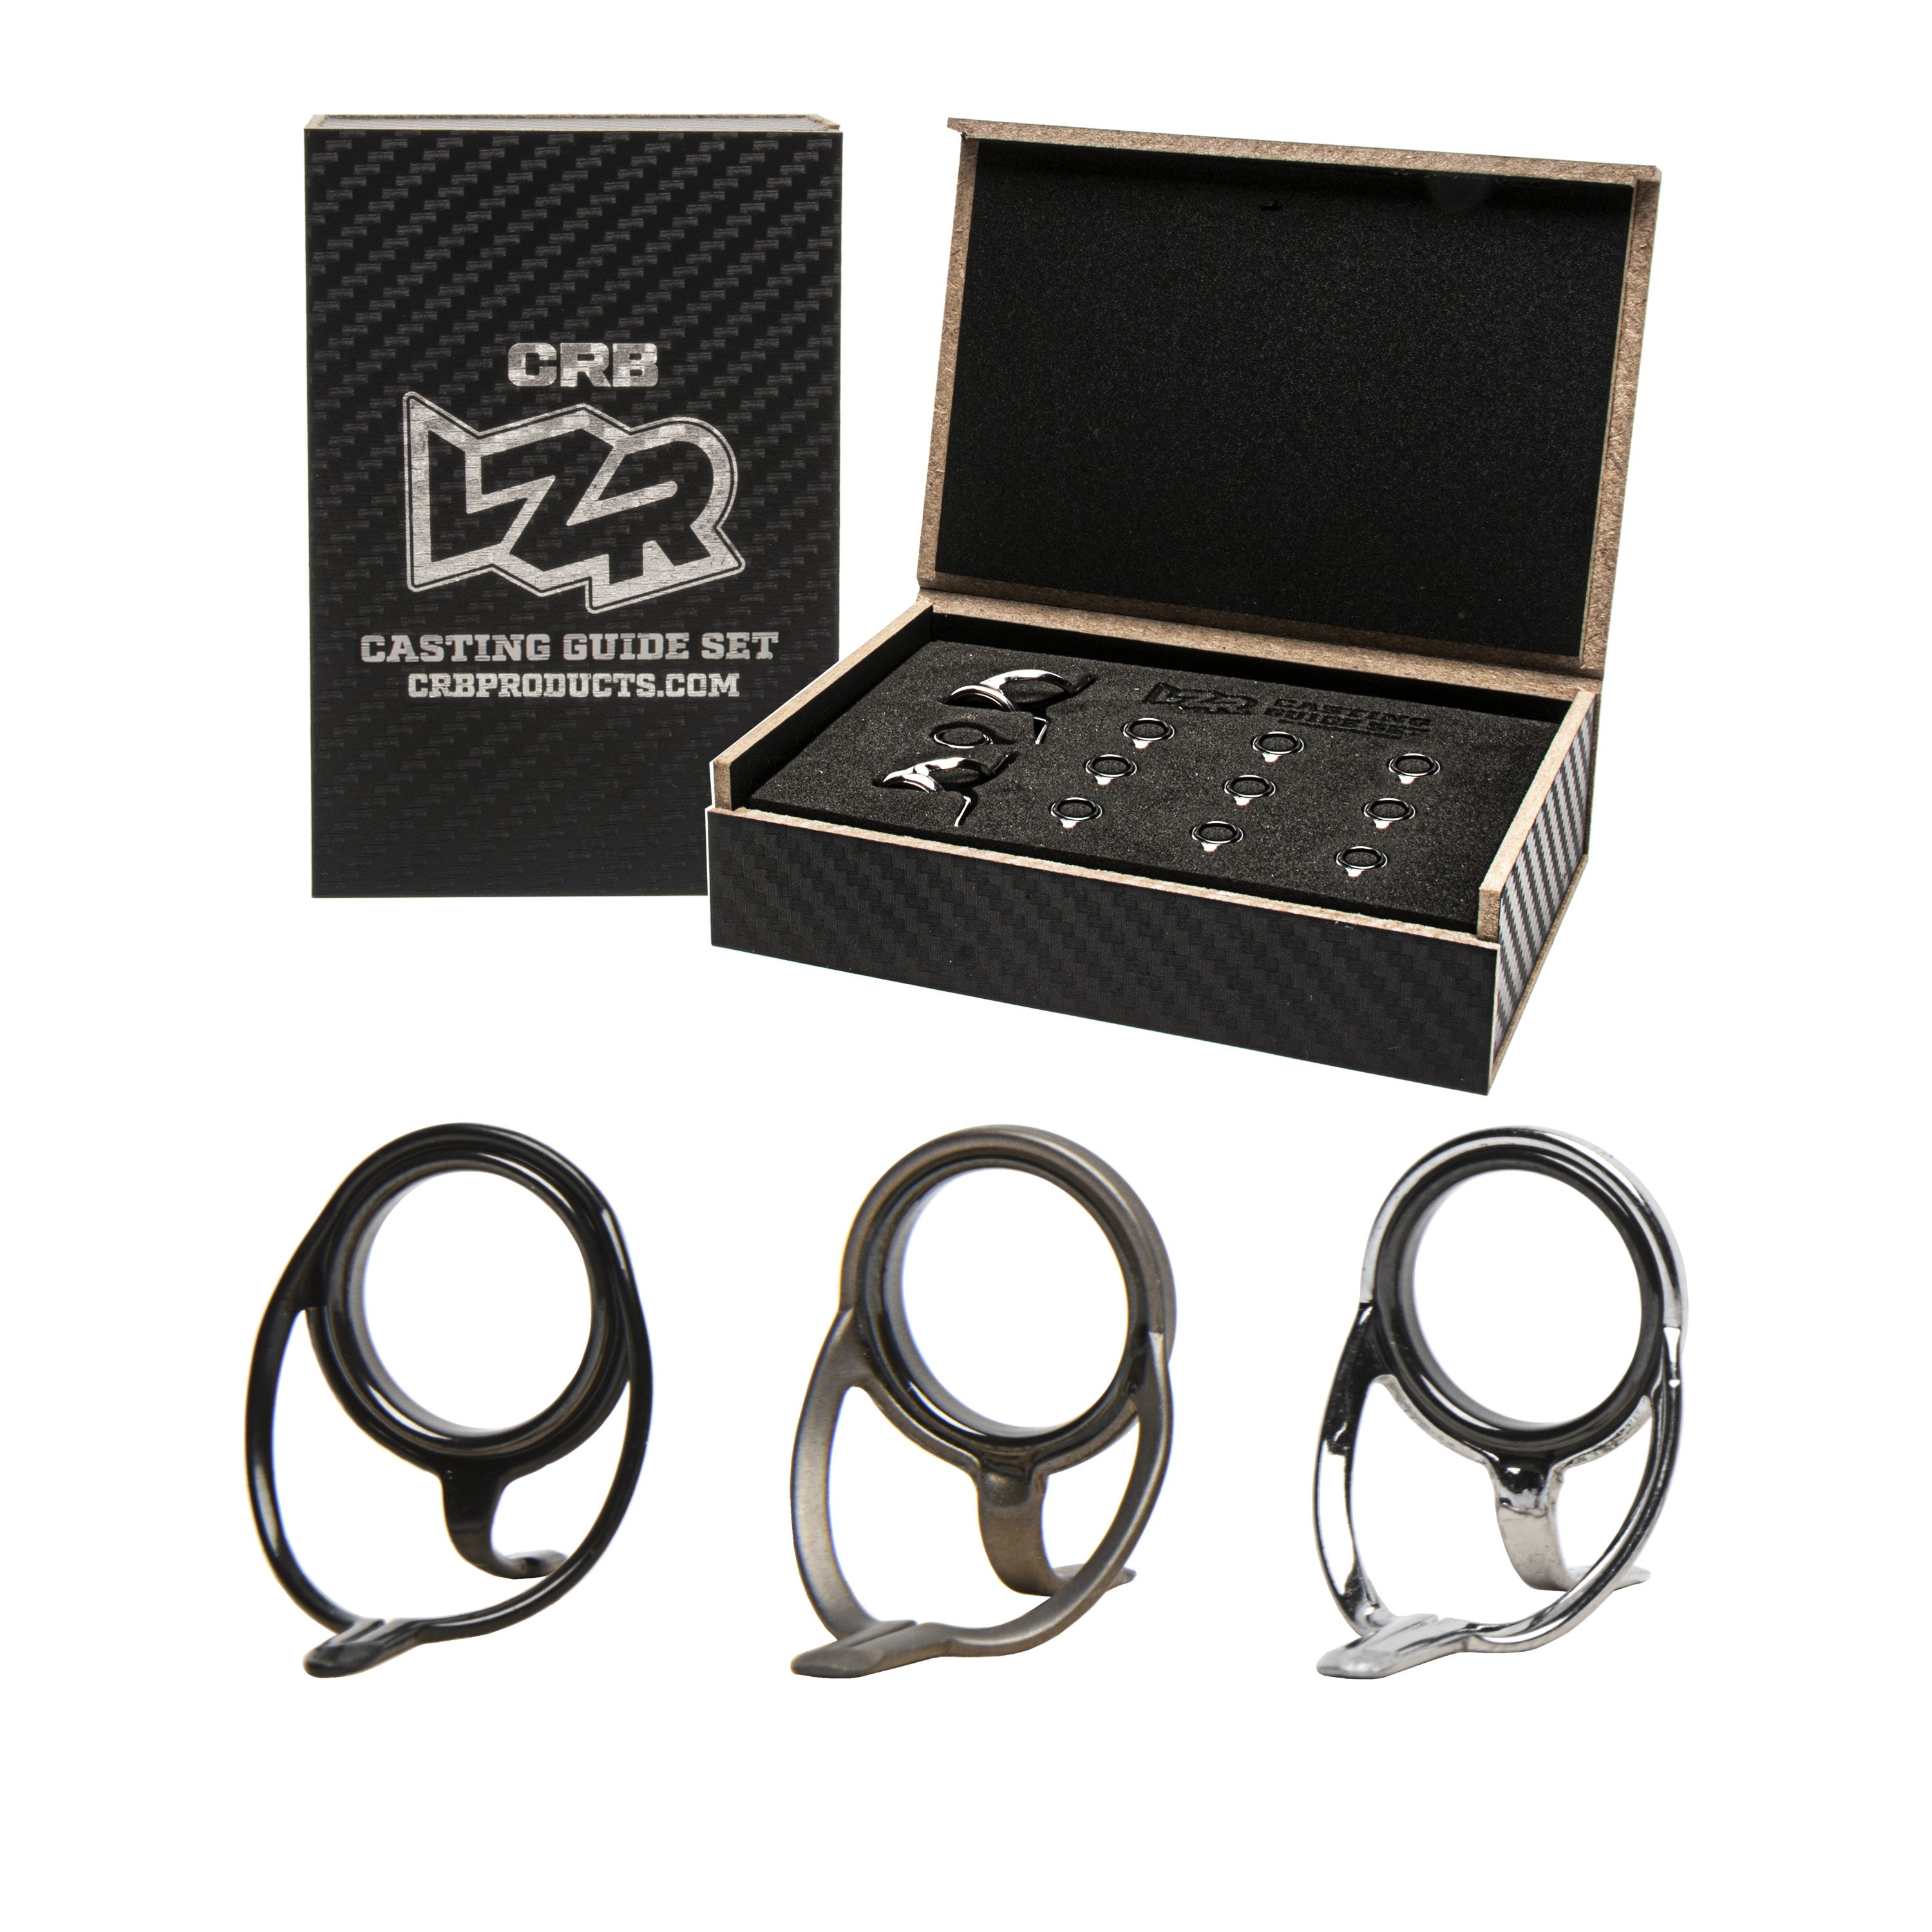 LZR Medium-Duty Spinning Rod Guide Kits